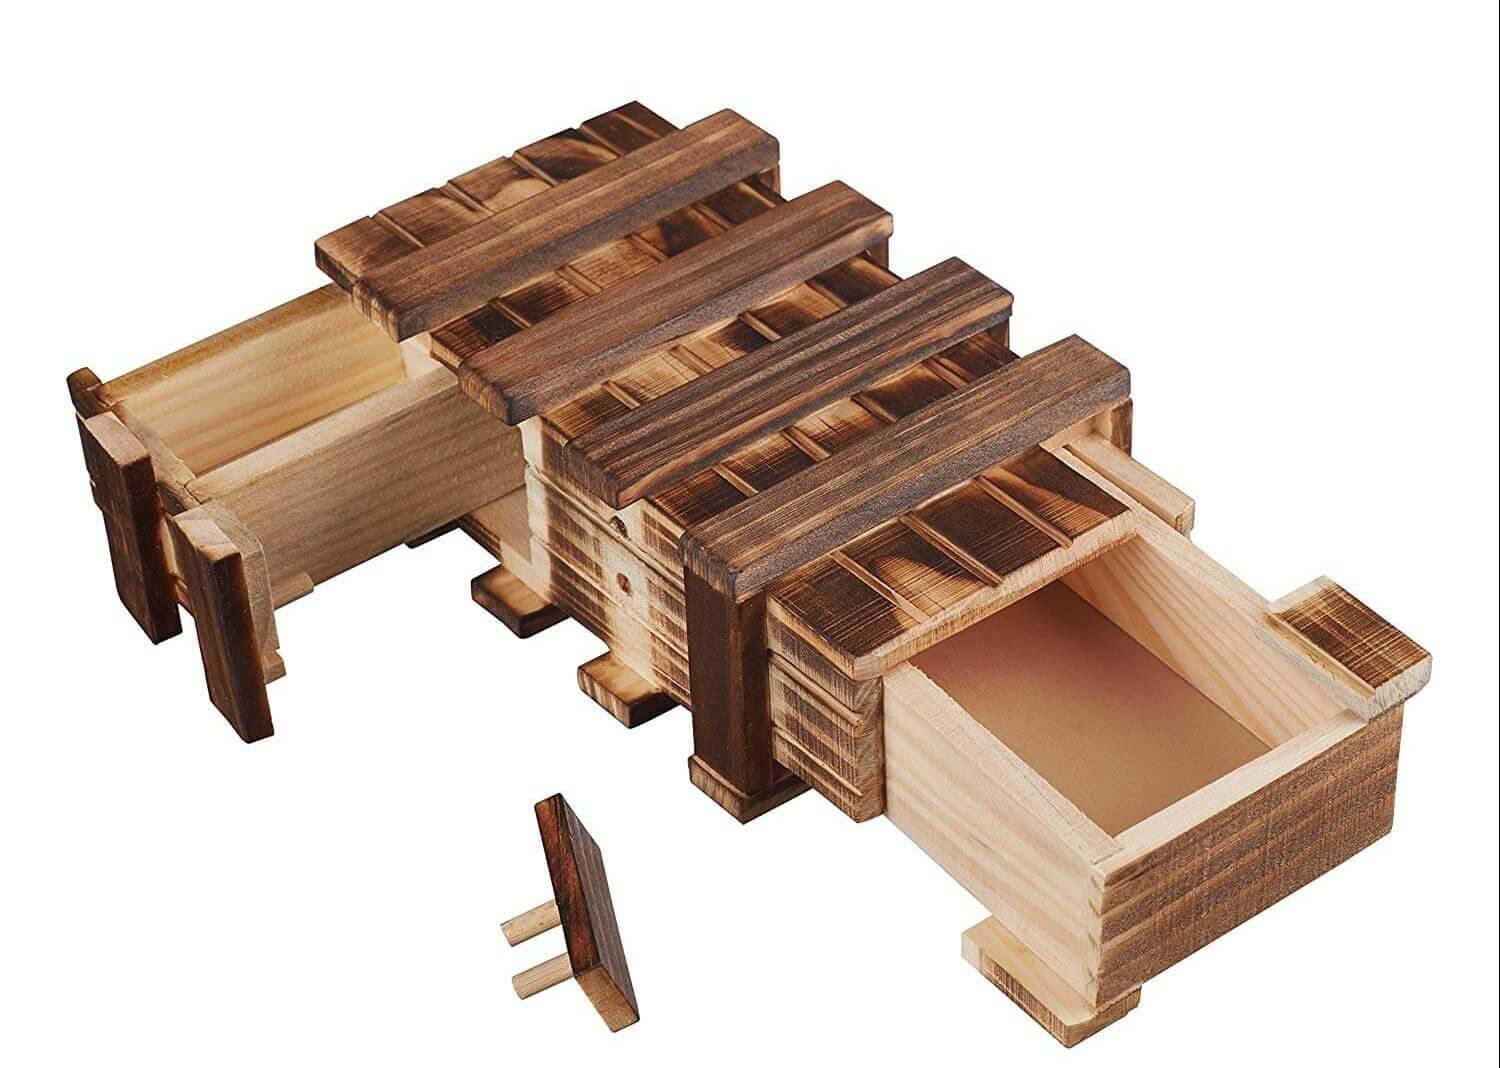 Geldgeschenk Holzbox mit Geheimfach - Geschenke aus Holz für Männer - Geheimfachbox - Geld verschenken - bestes Geldgeschenk